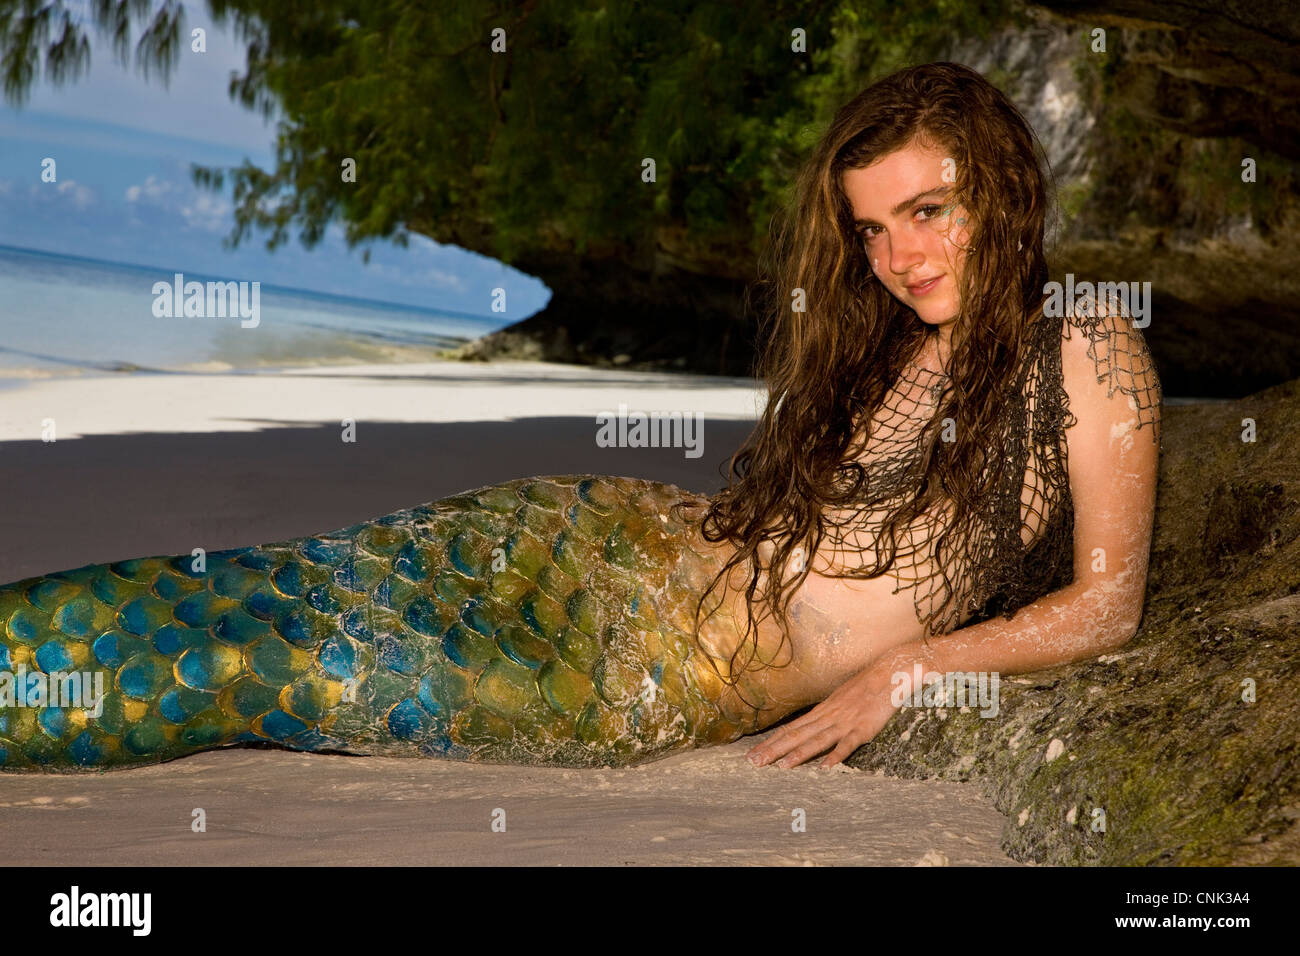 British mermaid sotto la sporgenza di roccia a Ulong Beach, sito di TV show sopravvissuti, Rock Islands, Palau, Stati Federati di Micronesia Foto Stock